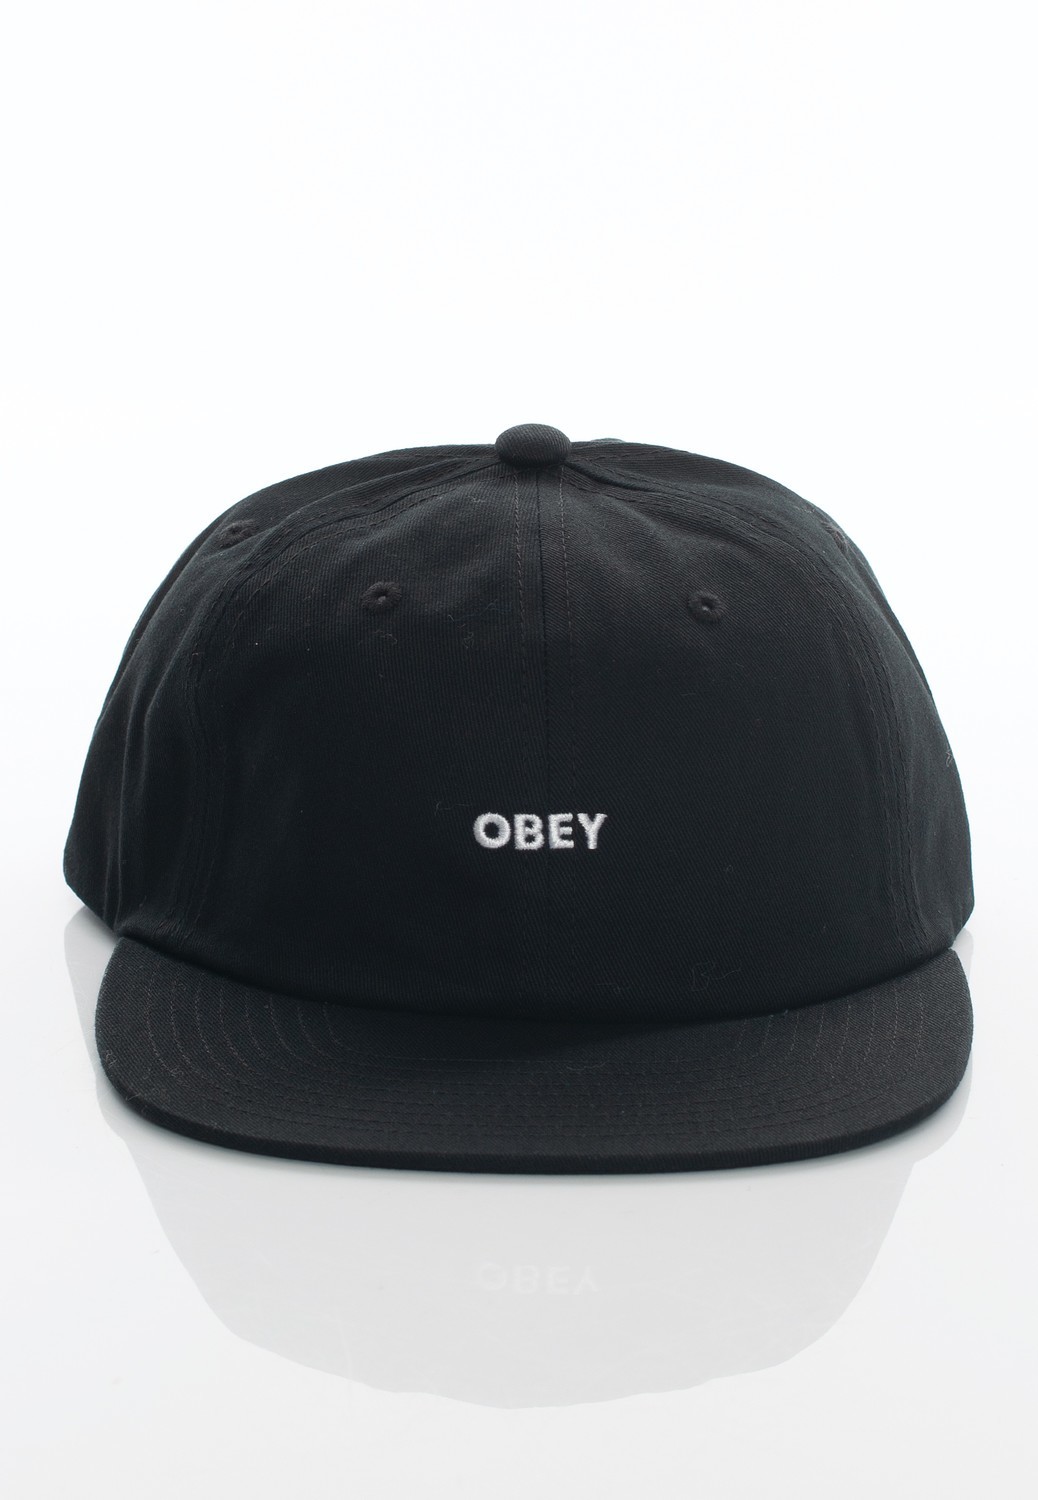 Obey - Bold Twill 6 Panel Strapback Black - Caps